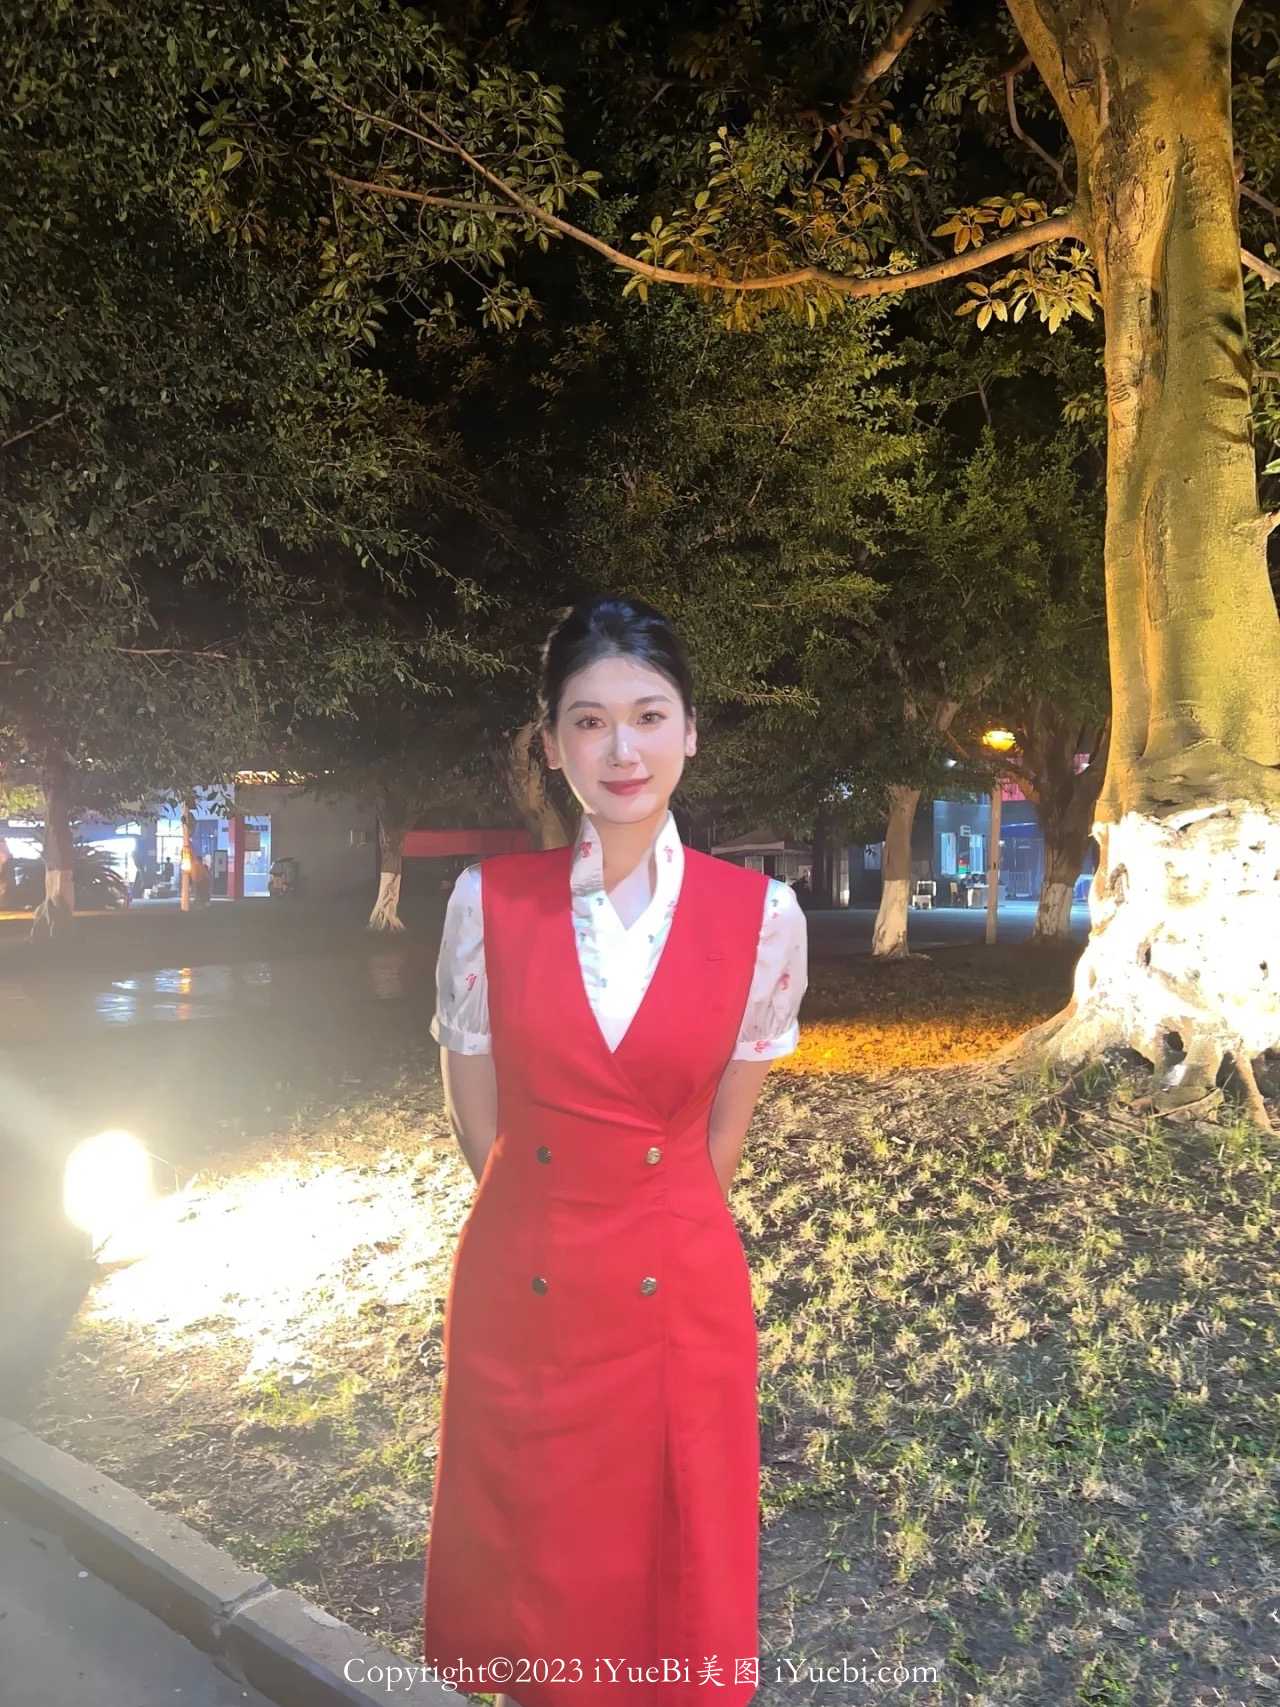 在夜幕下丰满大气的中国国际航空熟女空姐